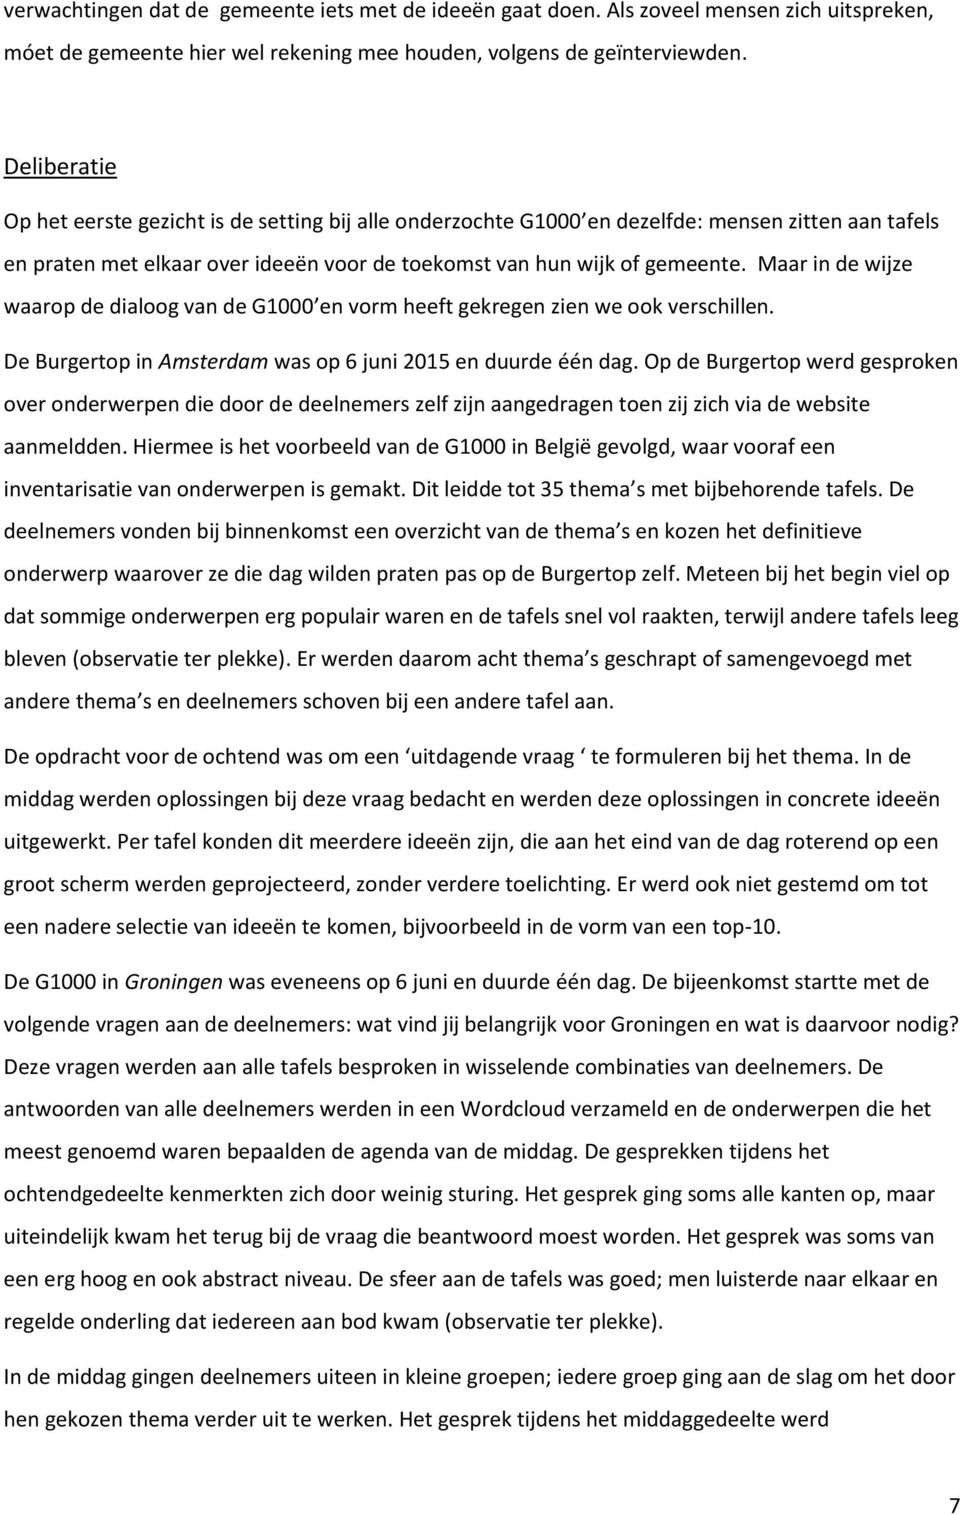 Maar in de wijze waarop de dialoog van de G1000 en vorm heeft gekregen zien we ook verschillen. De Burgertop in Amsterdam was op 6 juni 2015 en duurde één dag.